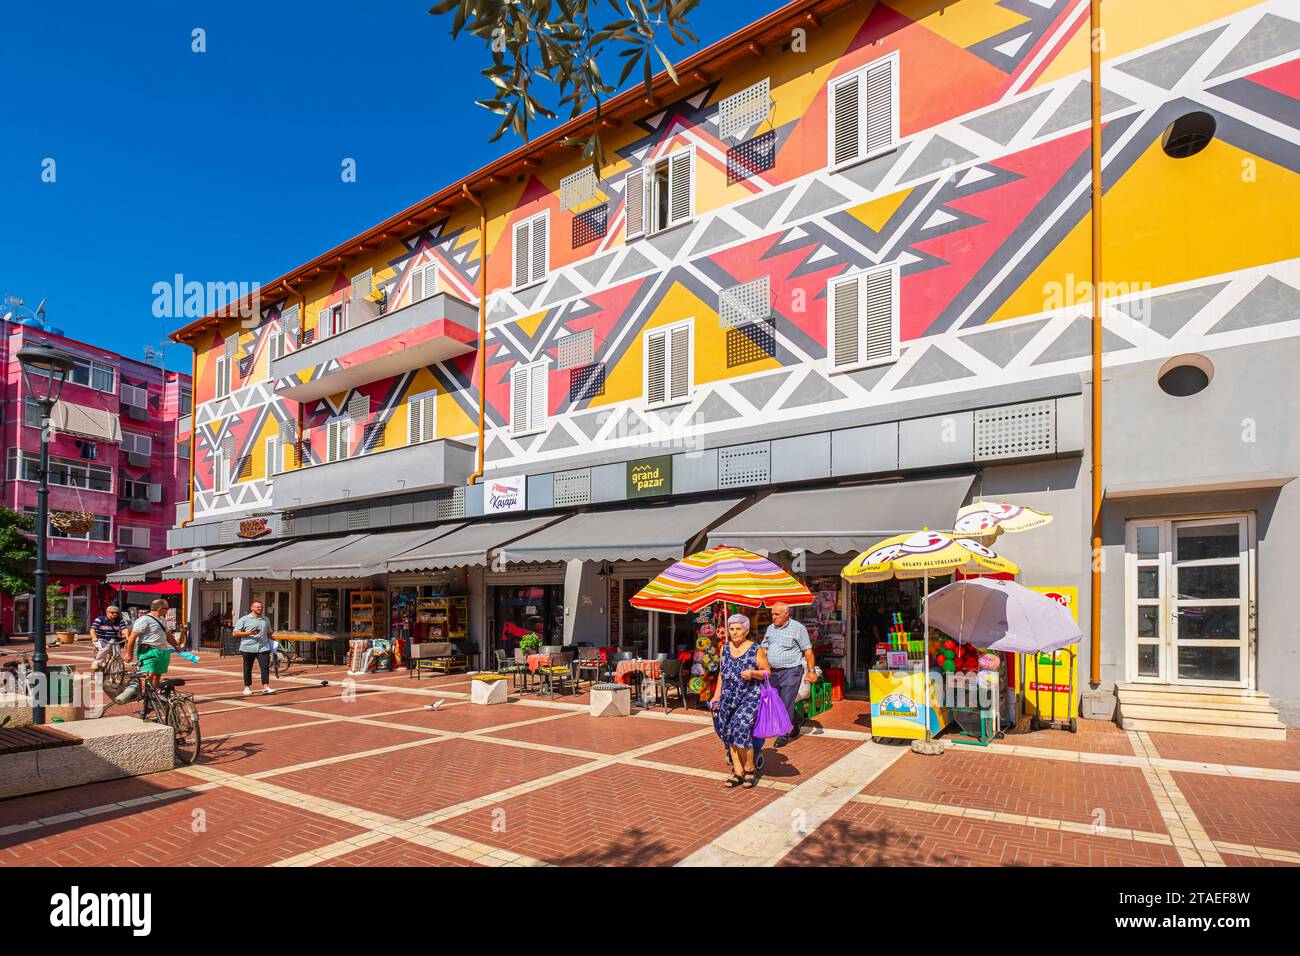 Albania, Tirana, the surroundings of Pazari i Ri central market or New Bazar Stock Photo